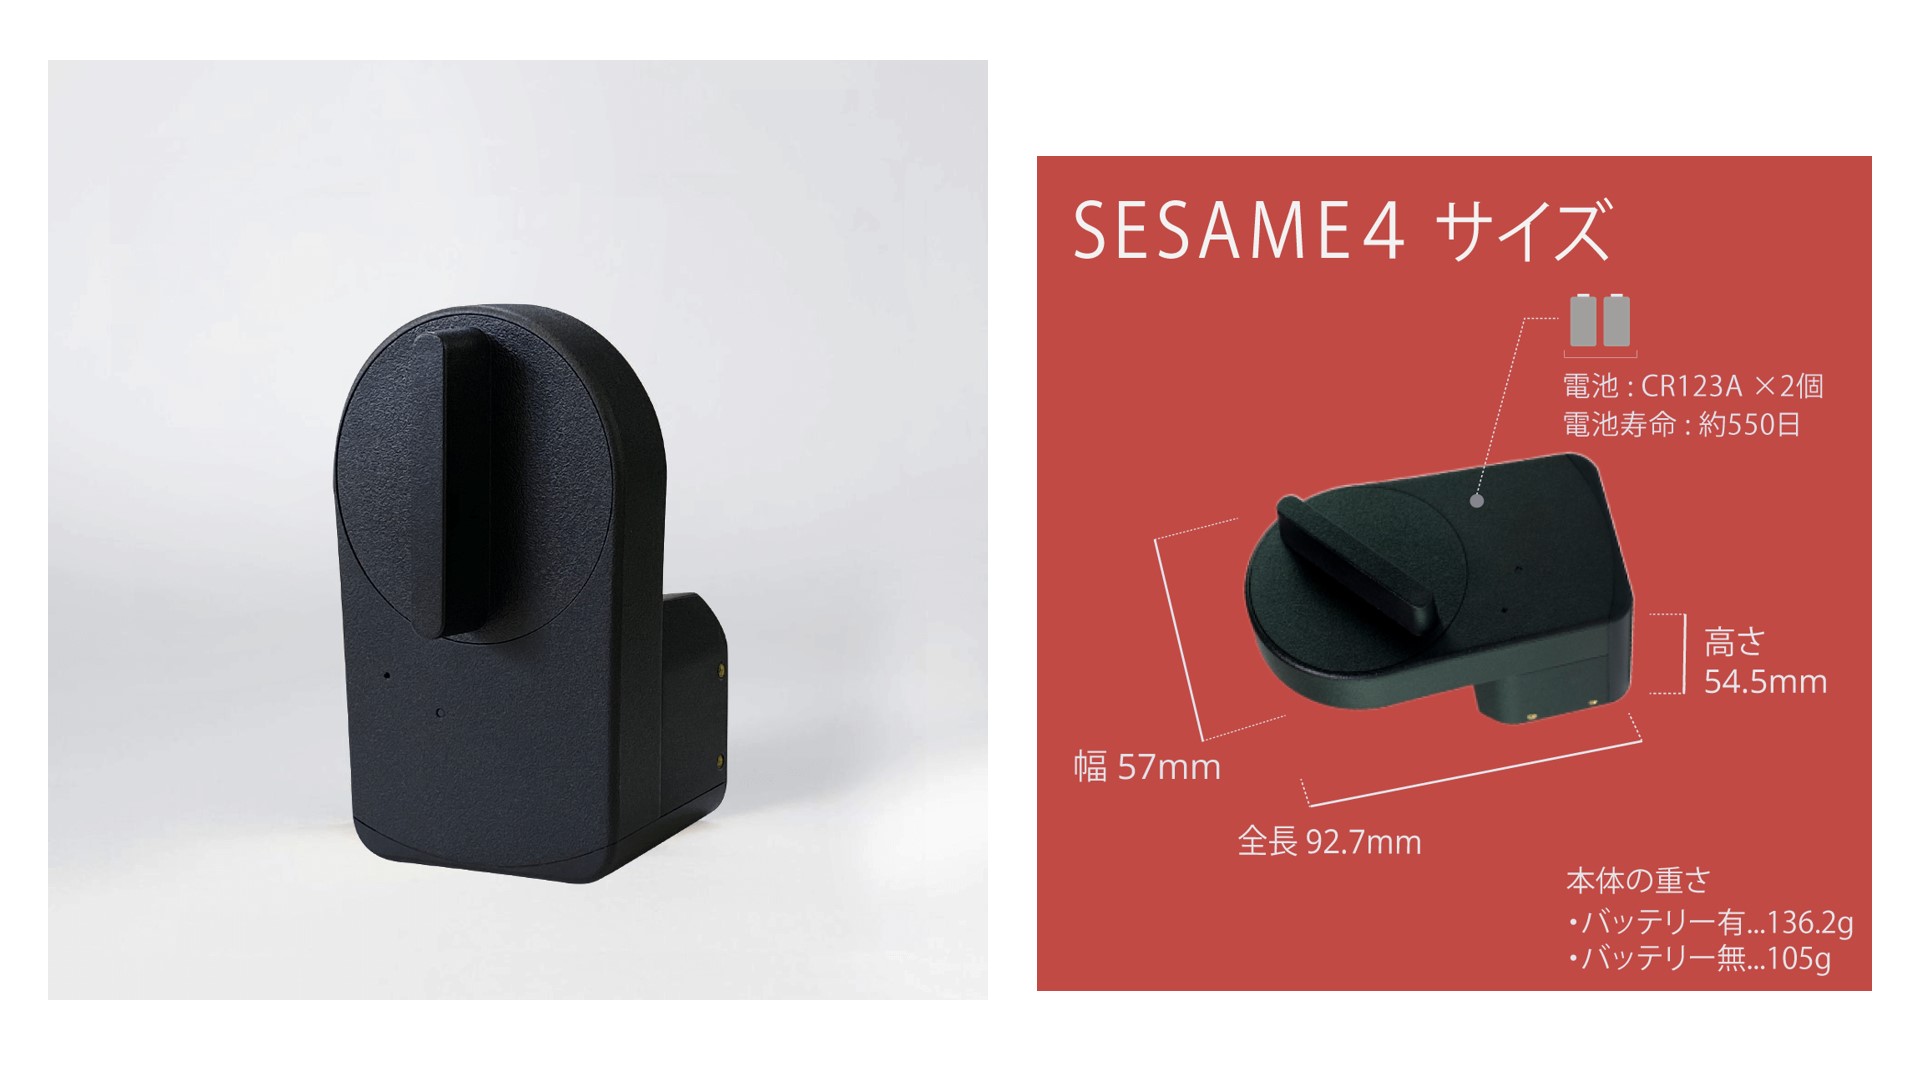 シールで簡単に取り付け可能なスマートロック「Sesame 4」取り扱い ...